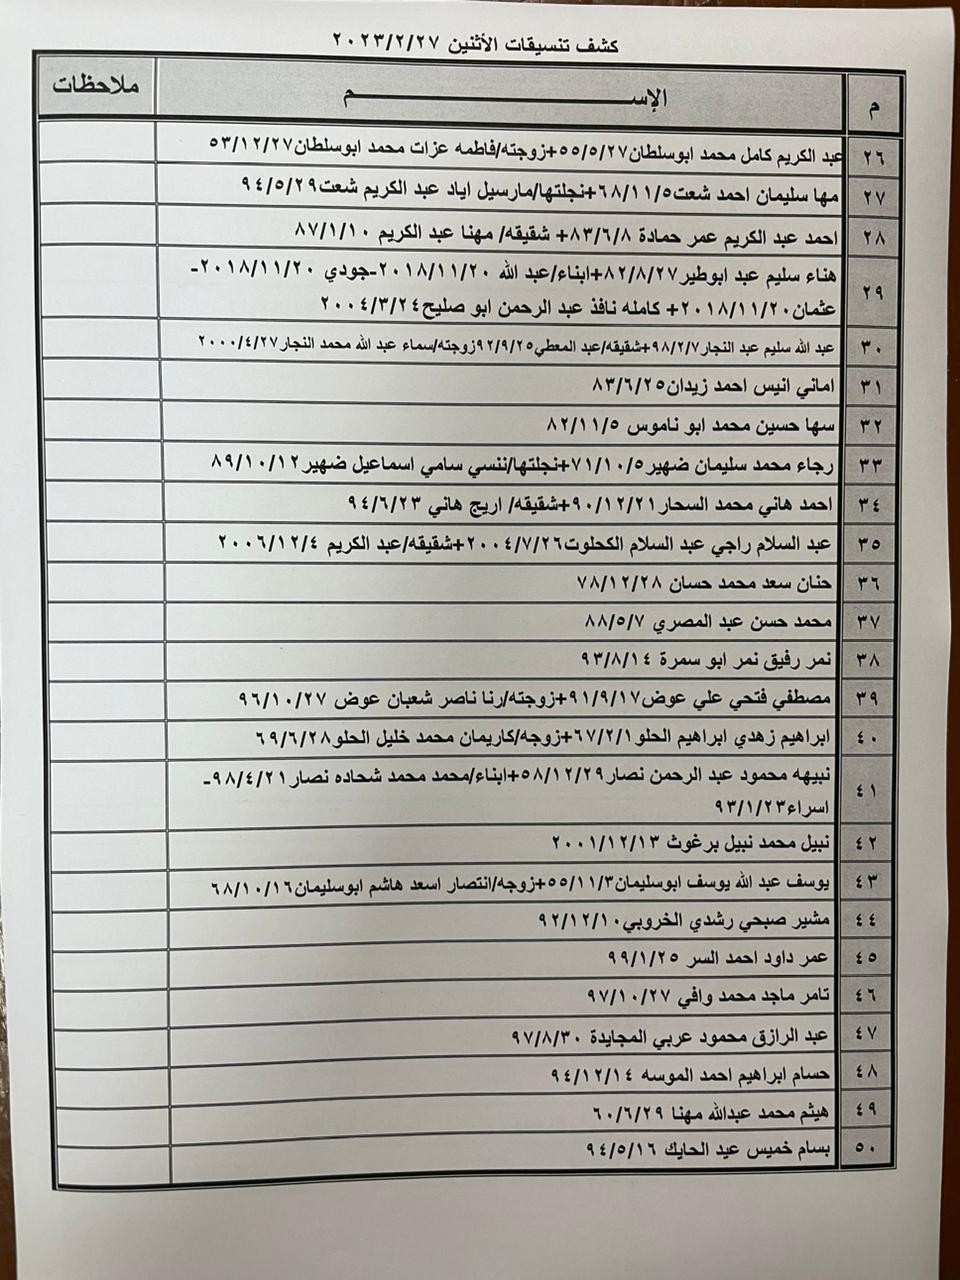 بالأسماء: كشف "التنسيقات المصرية" للسفر عبر معبر رفح الإثنين 27 فبراير 2023